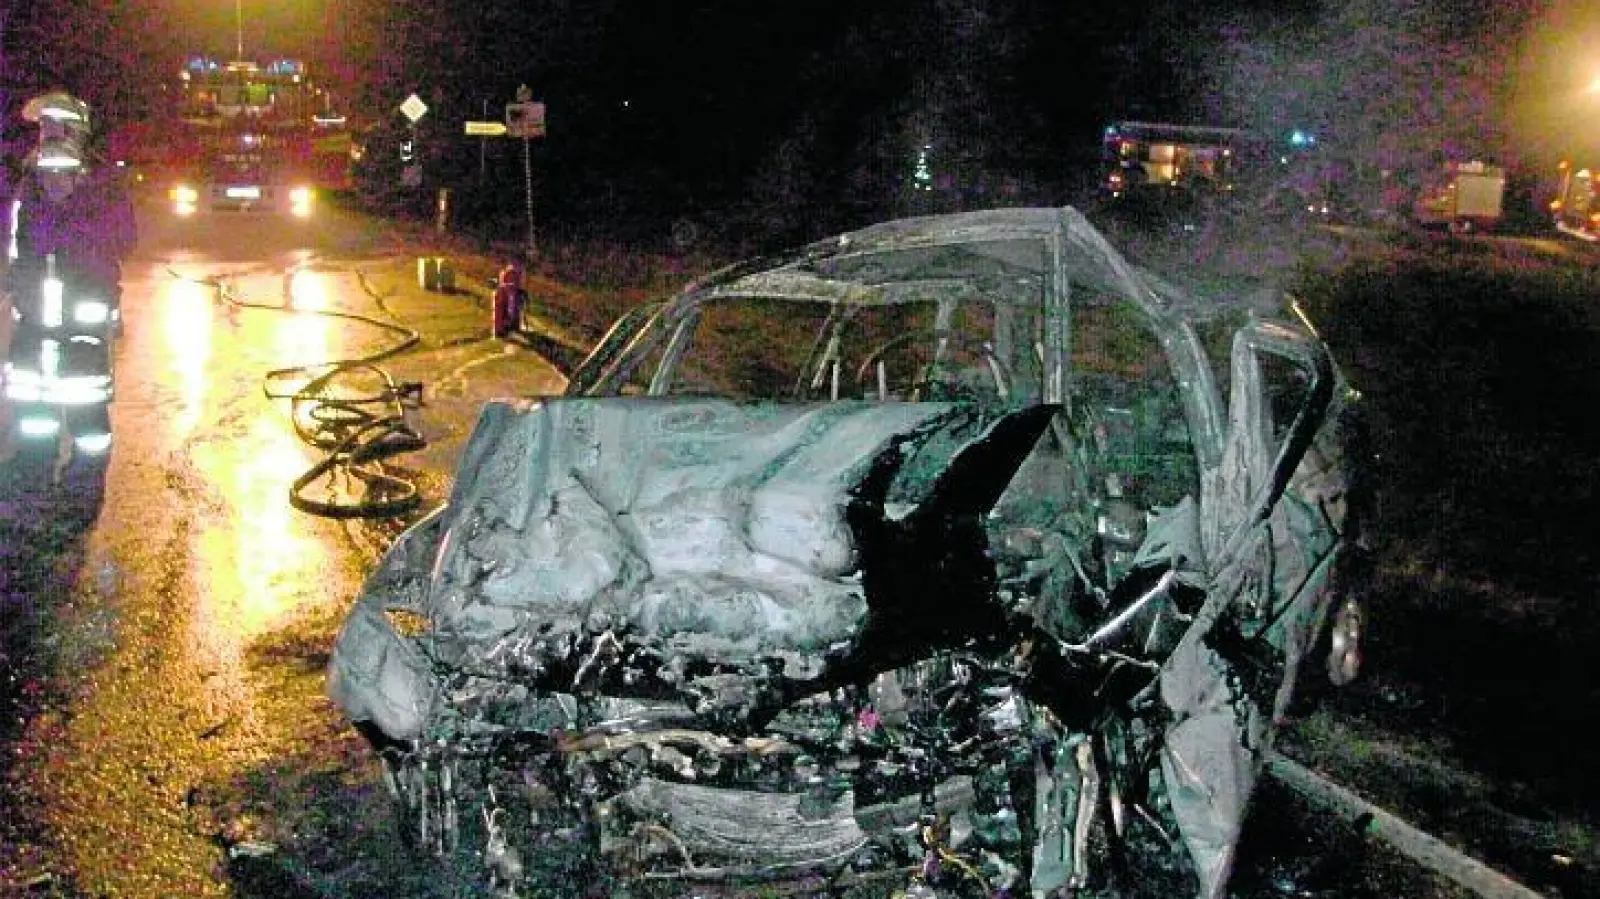 &lt;p&gt; &lt;x_bildunterschr&gt; &lt;b&gt;Vollständig zerstört  &lt;/b&gt;wurden diese beiden Autos bei einem Unfall zwischen Osterzhausen und Baar am Donnerstagabend. Ein 29-jähriger Alfa-Fahrer war bei der Abzweigung nach Heimpersdorf auf die Gegenfahrbahn geraten und in den Mini Cooper einer 29-jährigen Frau gekracht. Das Auto des Unfallverursachers war daraufhin in Flammen aufgegangen, doch sowohl er als auch die Frau konnten von Ersthelfern noch rechtzeitig aus den Wracks geborgen werden.  &lt;tab/&gt;Fotos: Schruff &lt;/x_bildunterschr&gt; &lt;/p&gt;